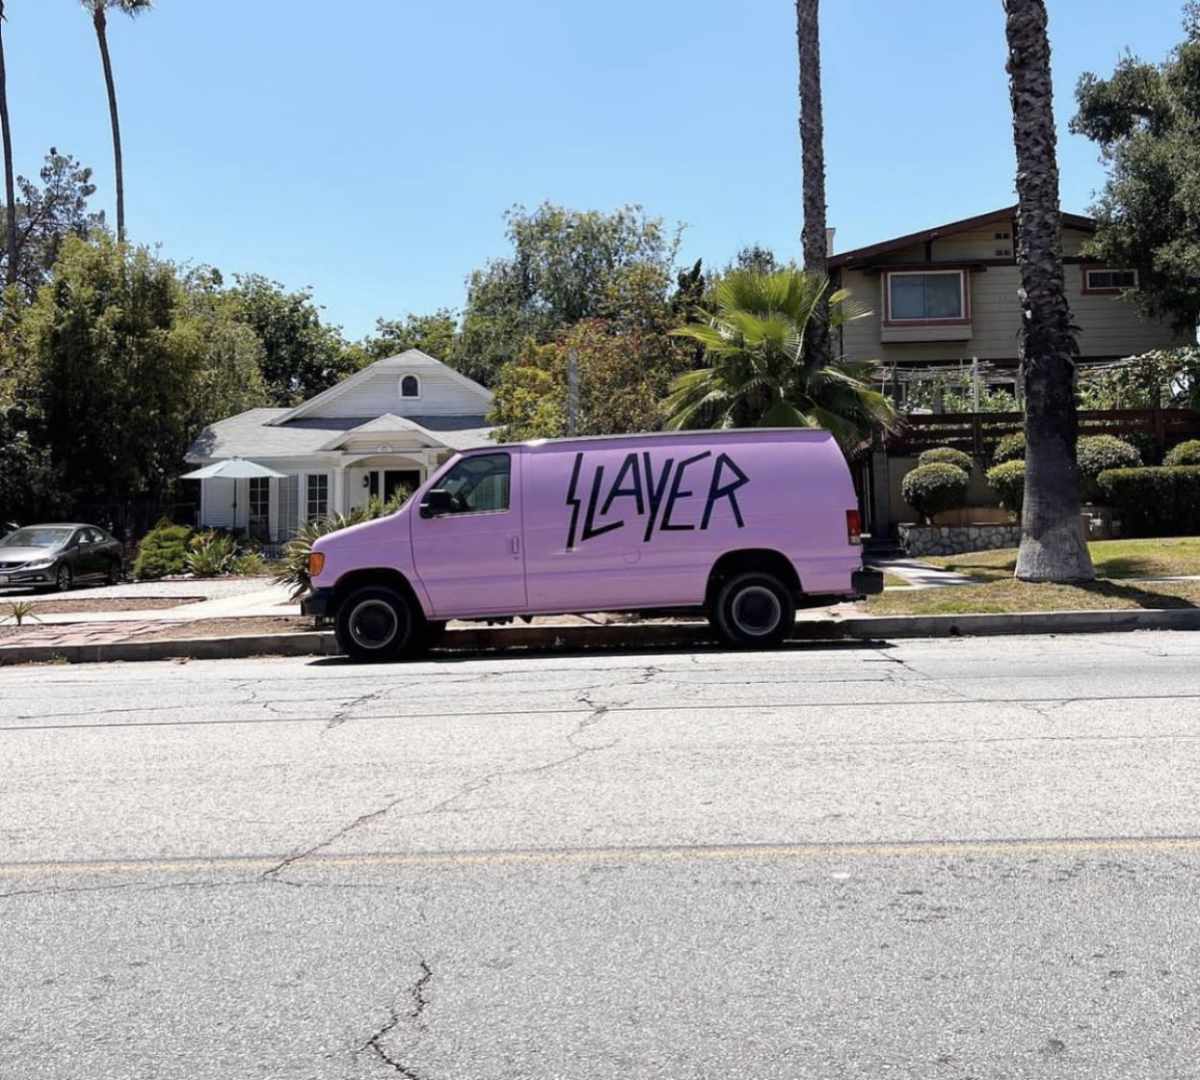 The best looking pink van I have ever seen!